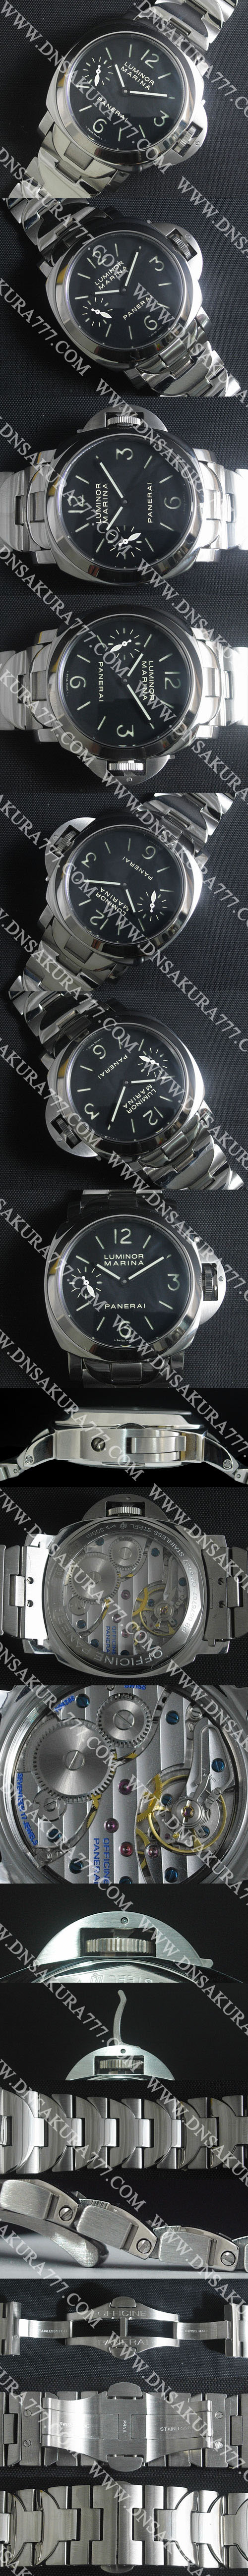 パネライ ルミノール マリーナ PAM00111 時計を買う必要がありますか？